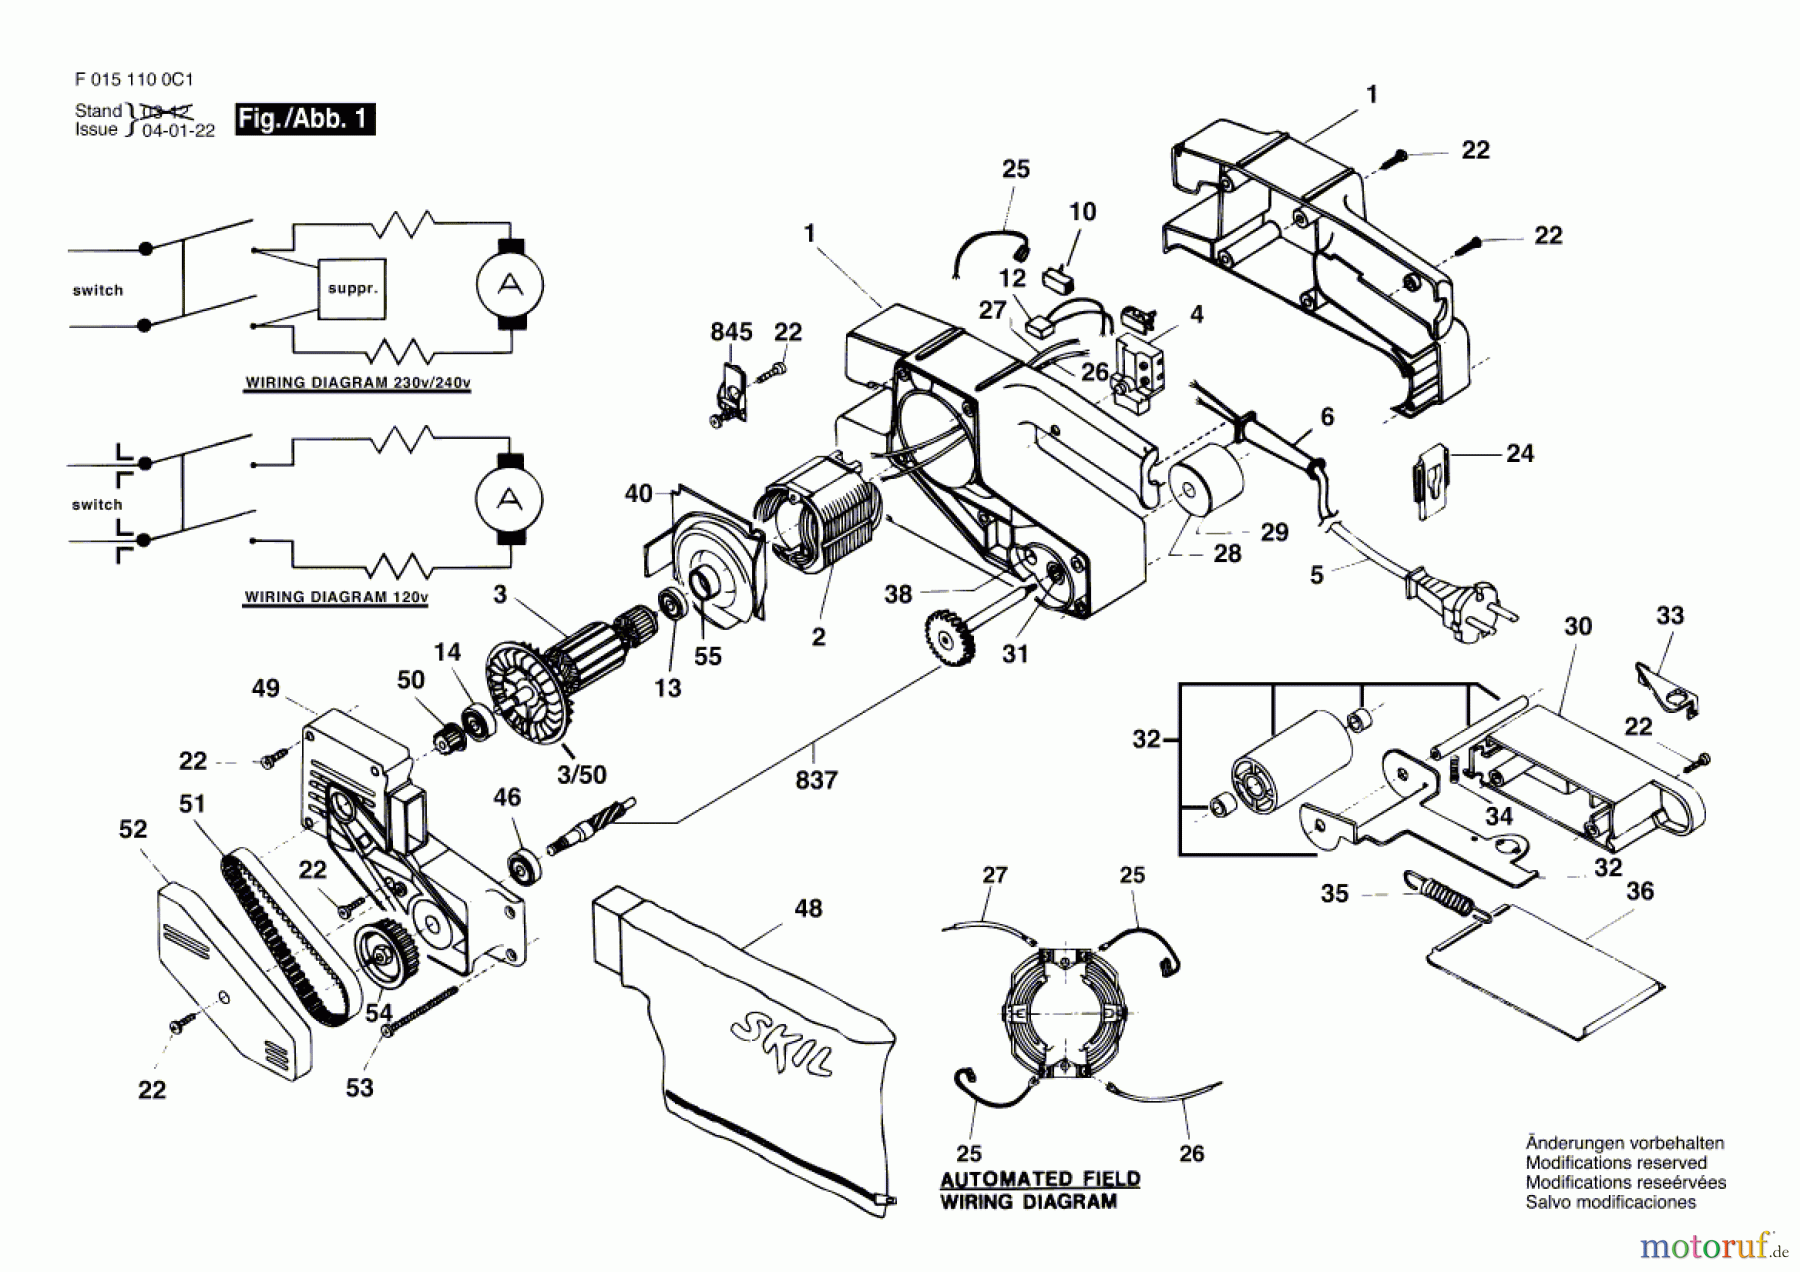  Bosch Werkzeug Bandschleifer 1100H1 Seite 1